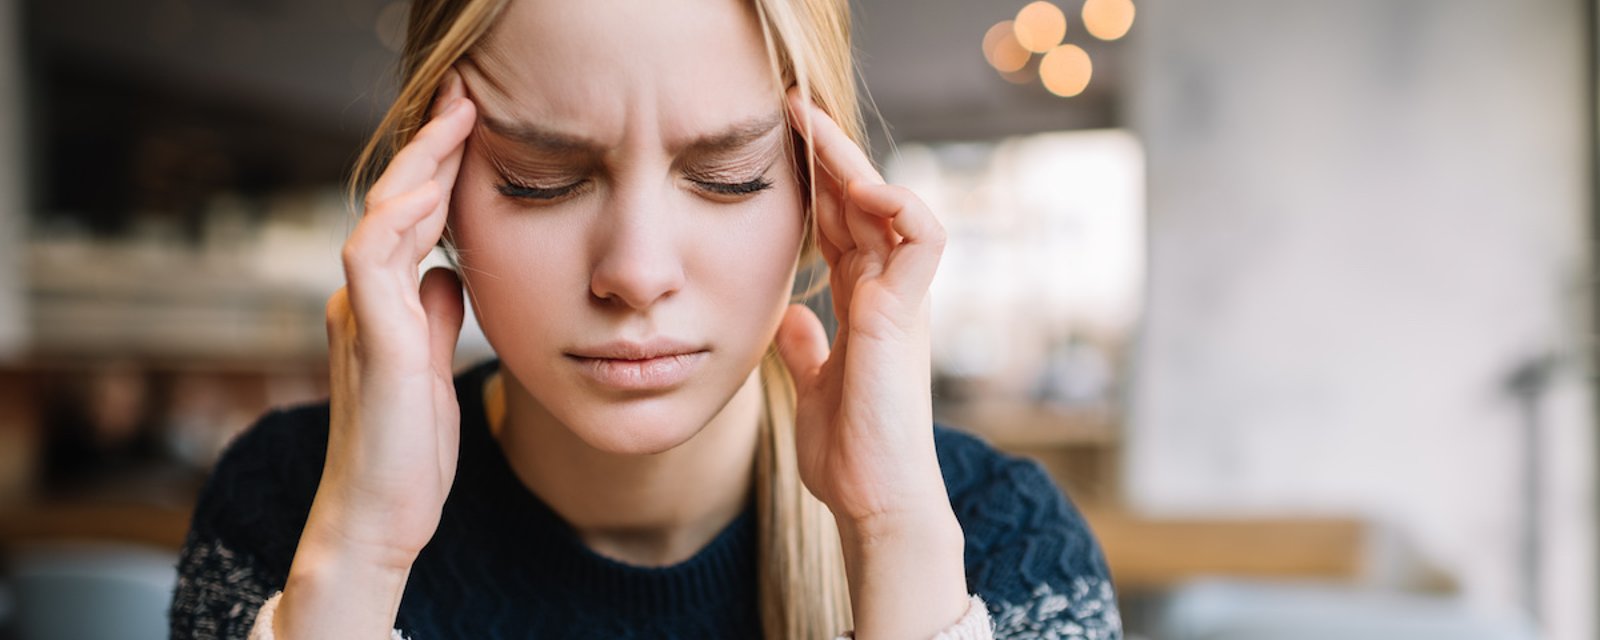 8 trucs pour soulager naturellement et rapidement une migraine